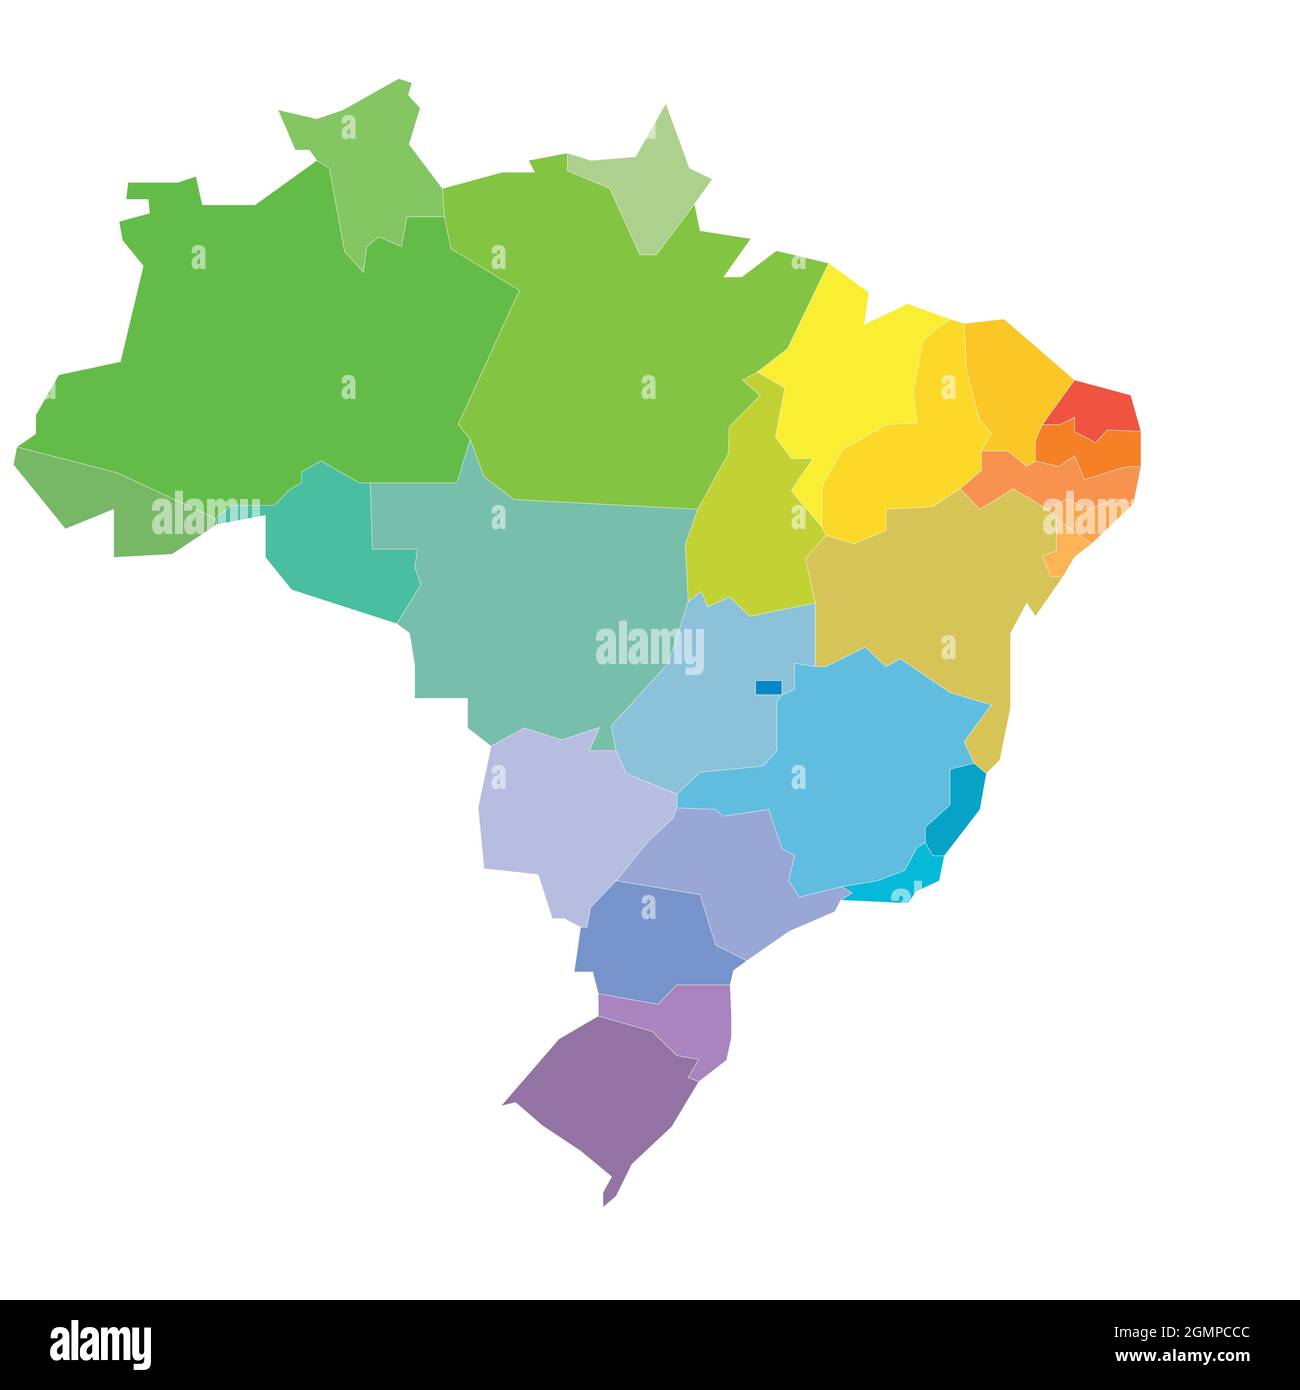 Bunte politische Landkarte von Brasilien. Verwaltungsabteilungen - Staaten. Einfache, flache, leere Vektorkarte Stock Vektor